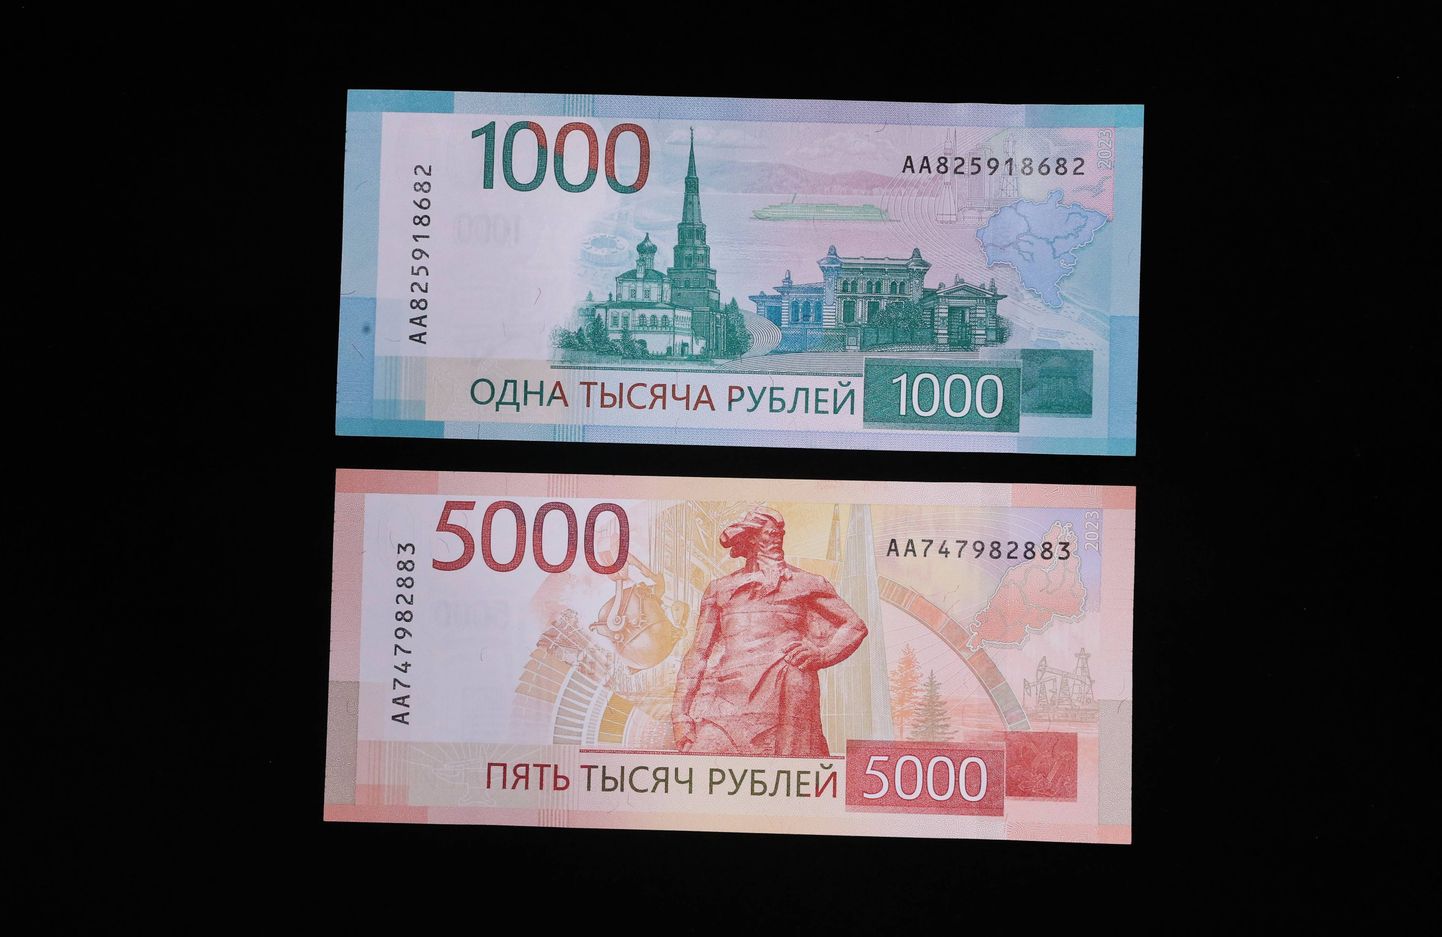 Uue kujundusega Vene 1000 ja 5000 rublased rahatähed